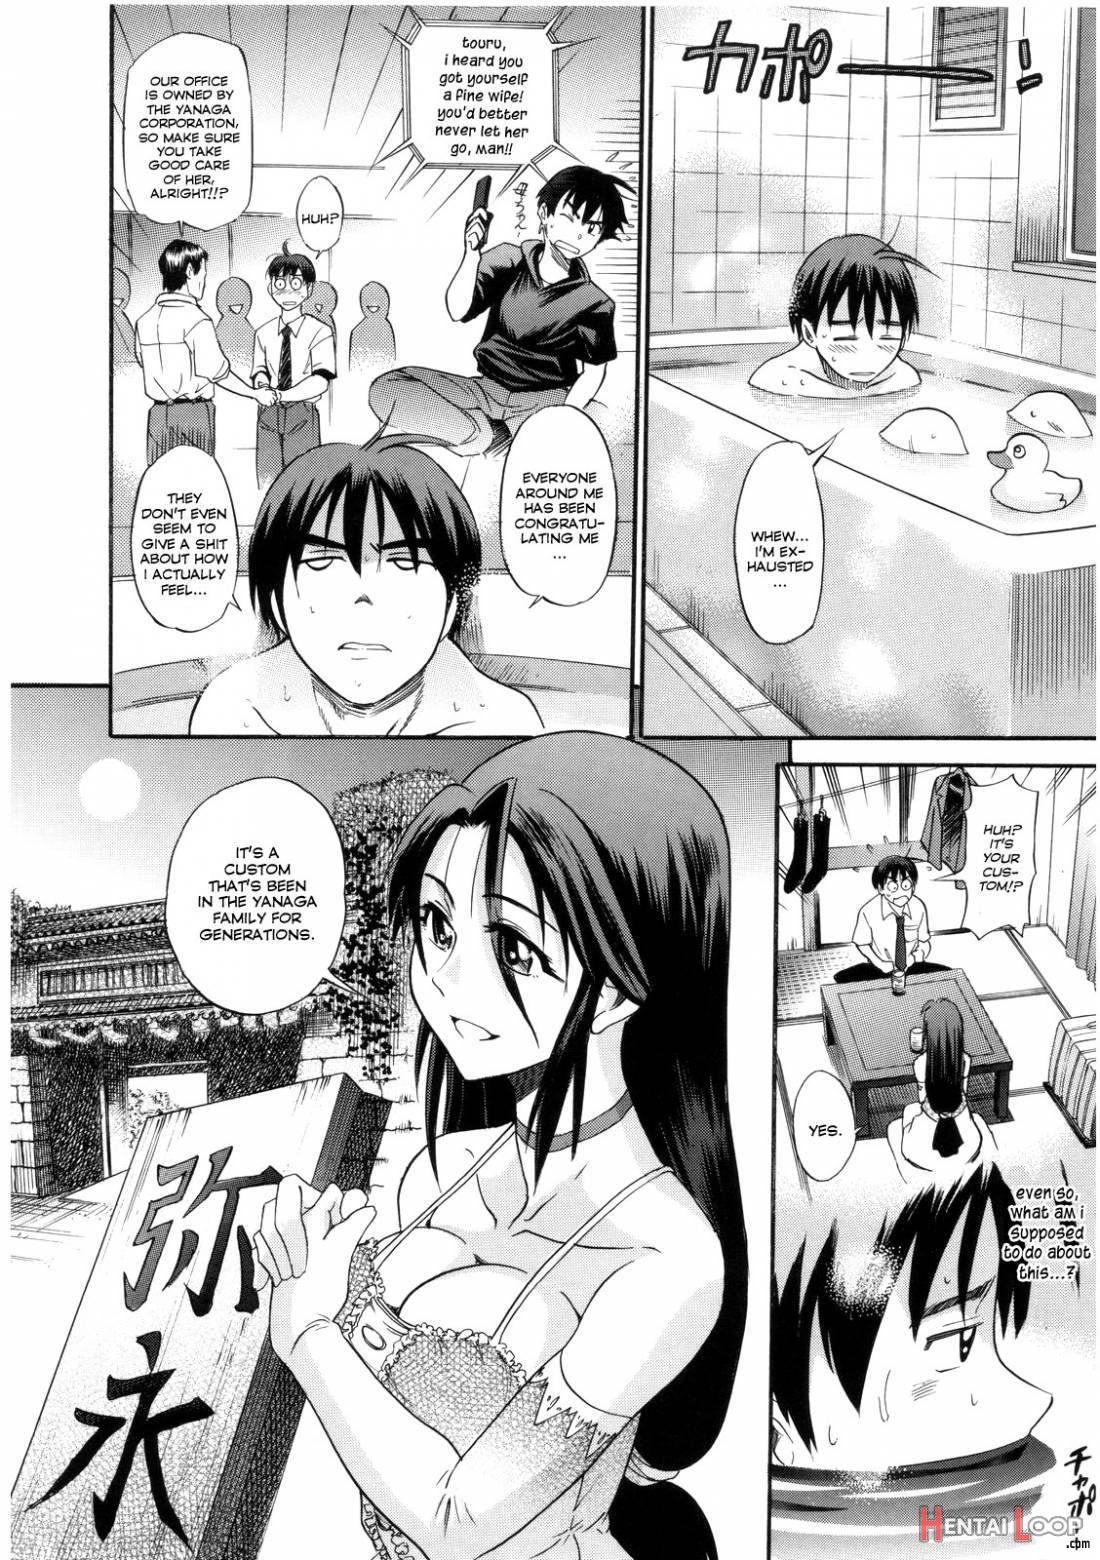 B-Chiku page 8